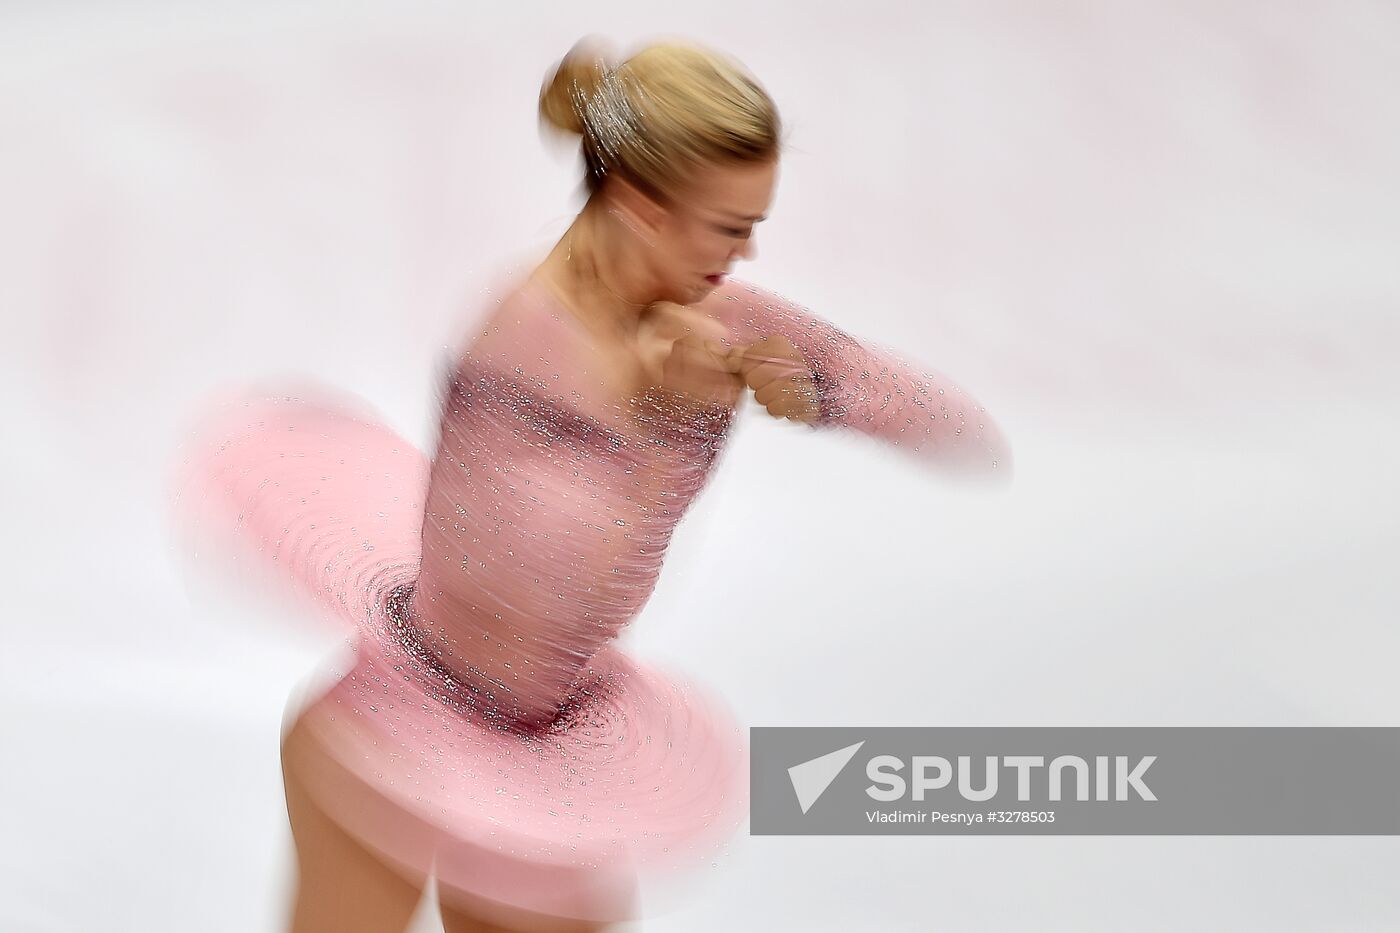 European Figure Skating Championships. Women's free skating